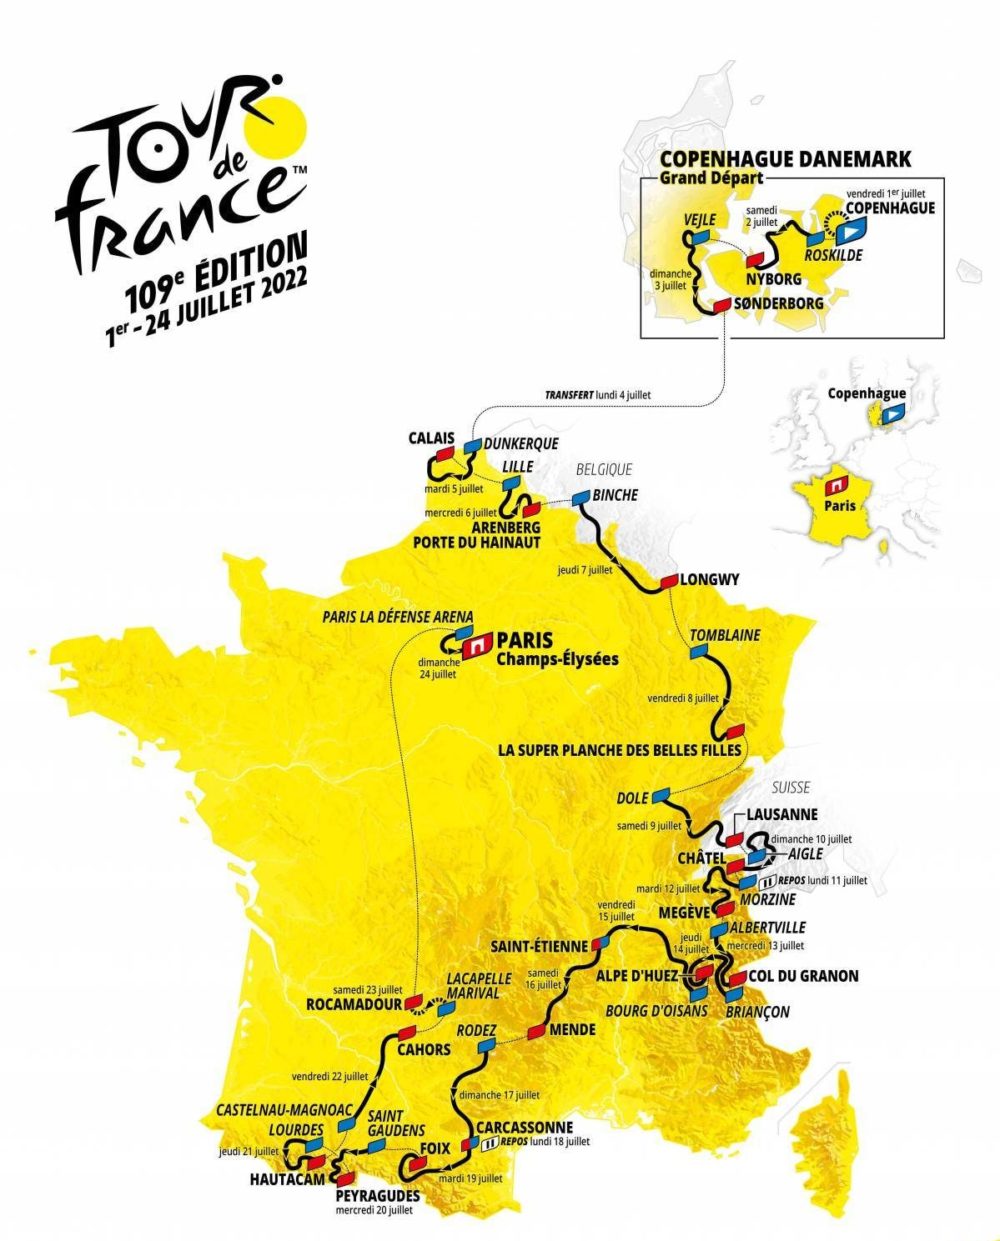 grad krystal kontrast Two thrilling Tour de France routes unveiled | Trek Race Shop